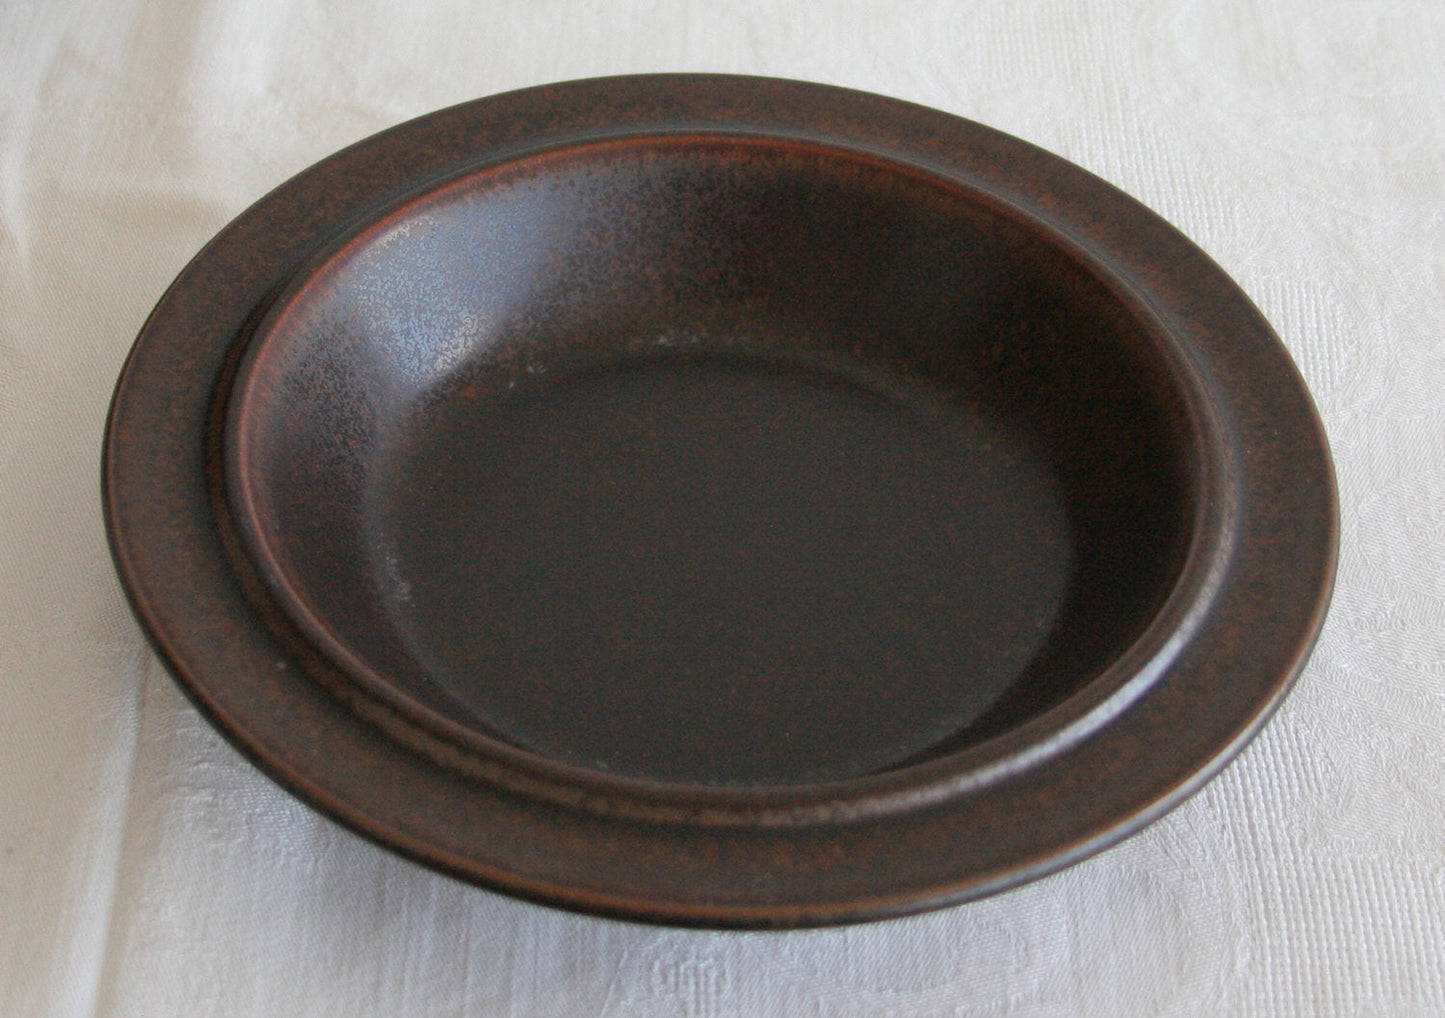 Arabia ULLA PROCOPÉ Tableware RUSKA Stoneware Soup Cereal Bowl 20cm Mollaris.com 